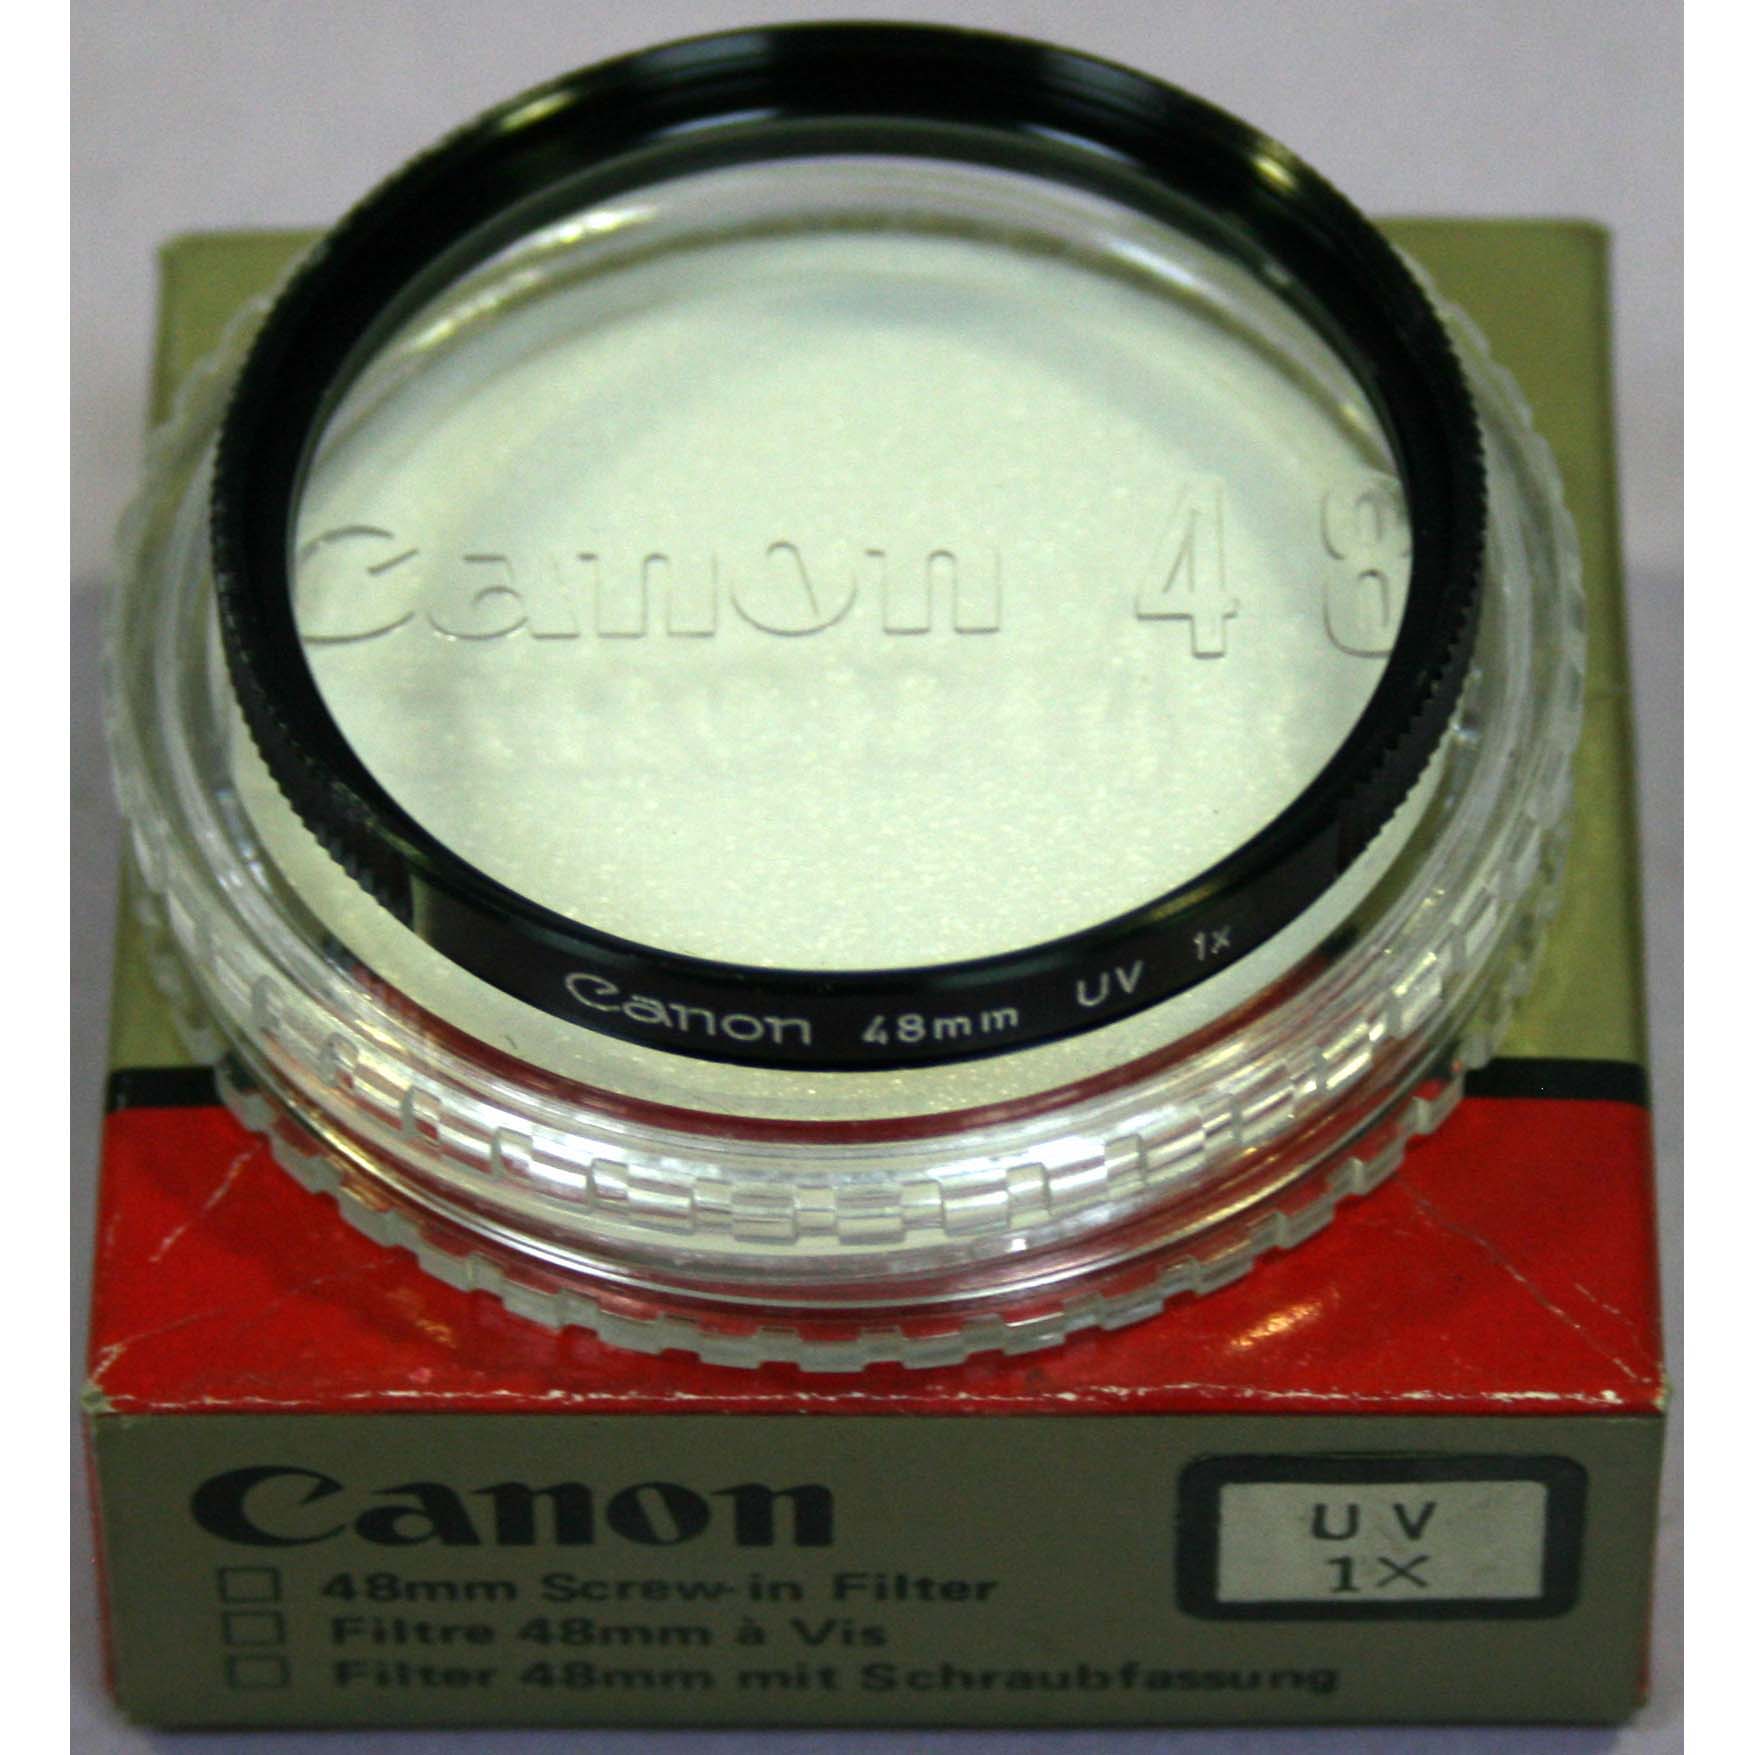 FILTRO CANON 48 UV 1X